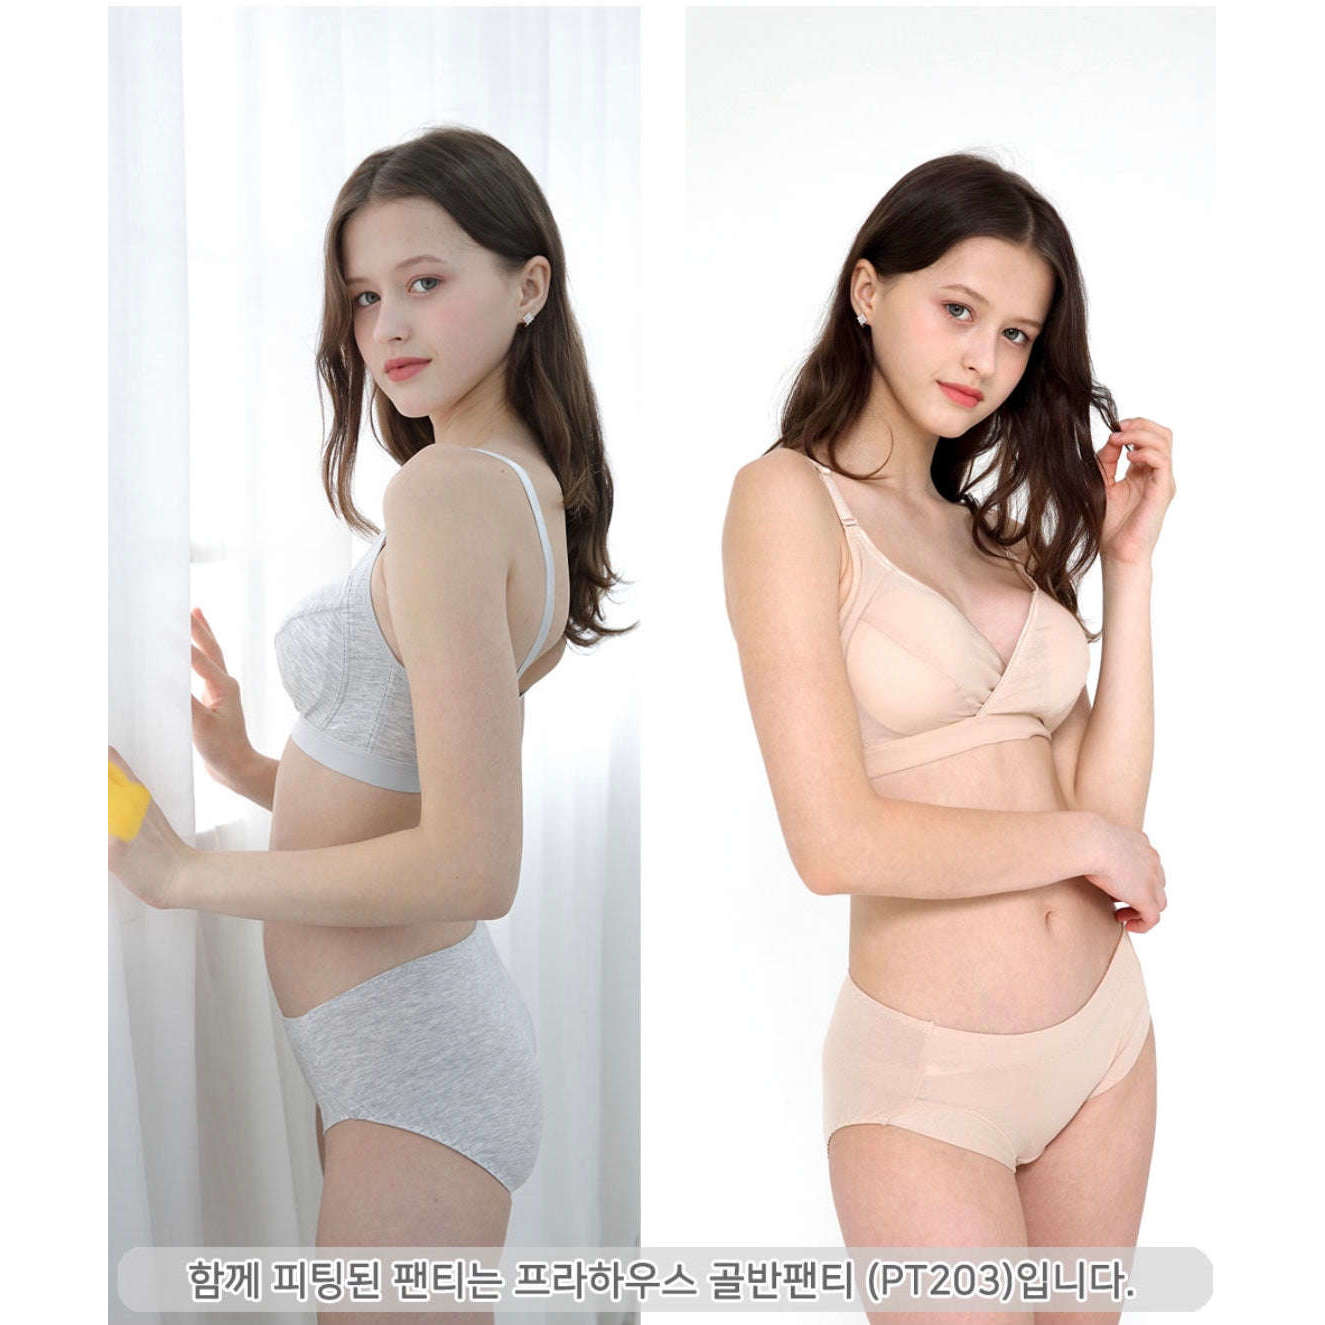 MUMMY.cc:PRAHAUS 韓國製孕婦天絲交叉哺乳胸圍 BR103